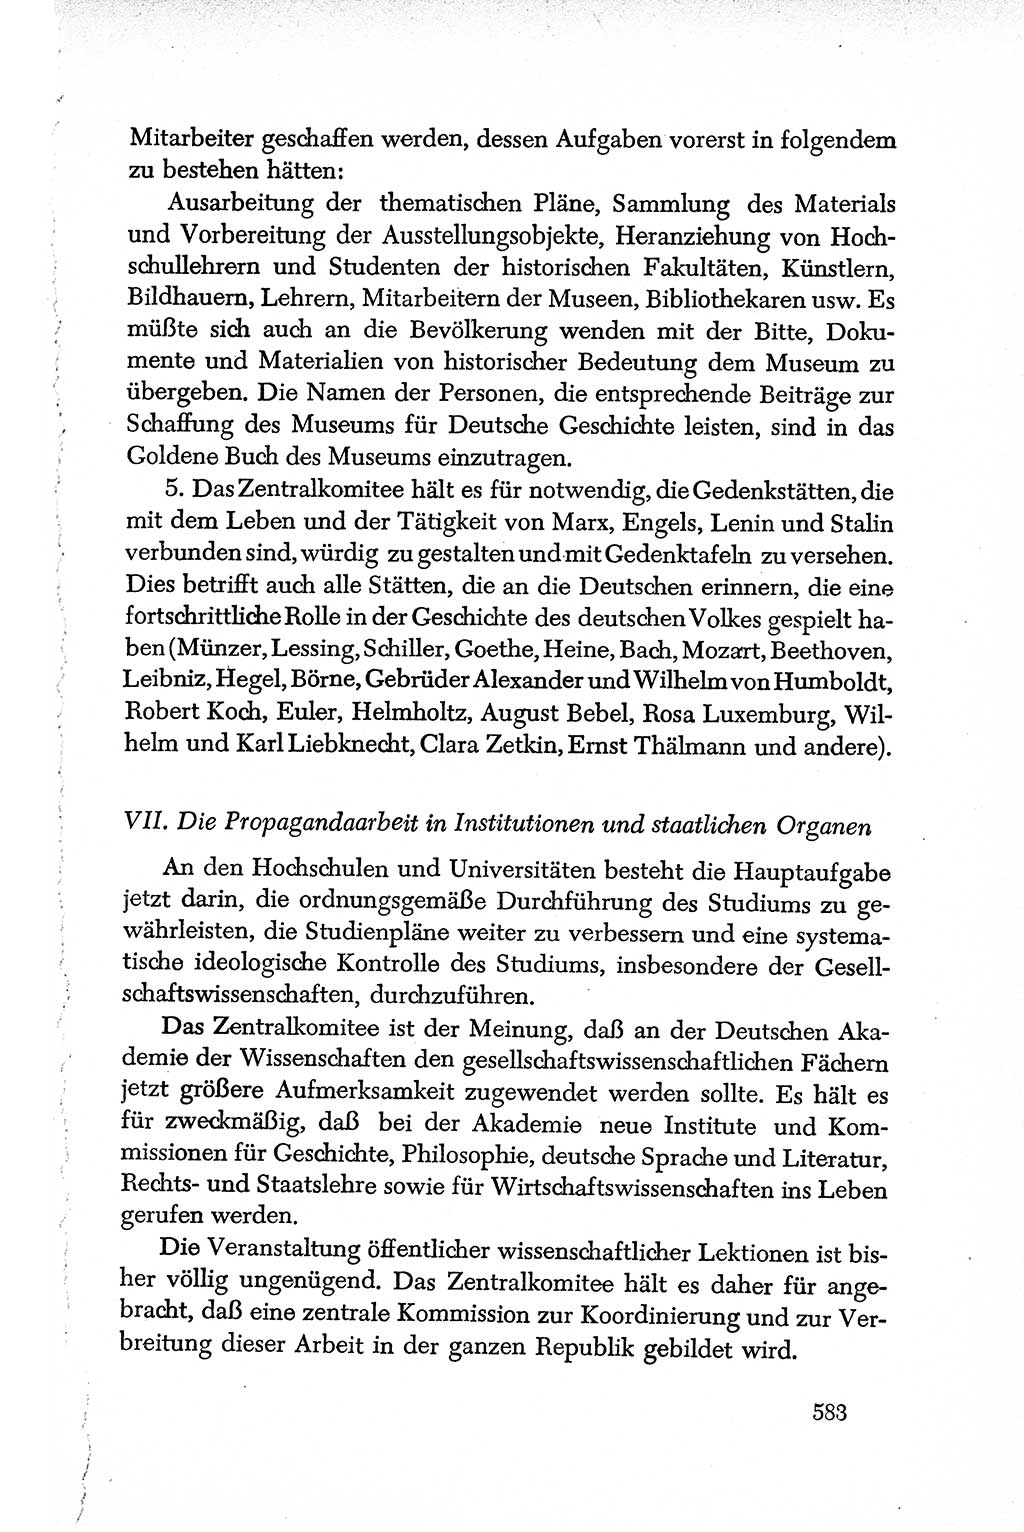 Dokumente der Sozialistischen Einheitspartei Deutschlands (SED) [Deutsche Demokratische Republik (DDR)] 1950-1952, Seite 583 (Dok. SED DDR 1950-1952, S. 583)